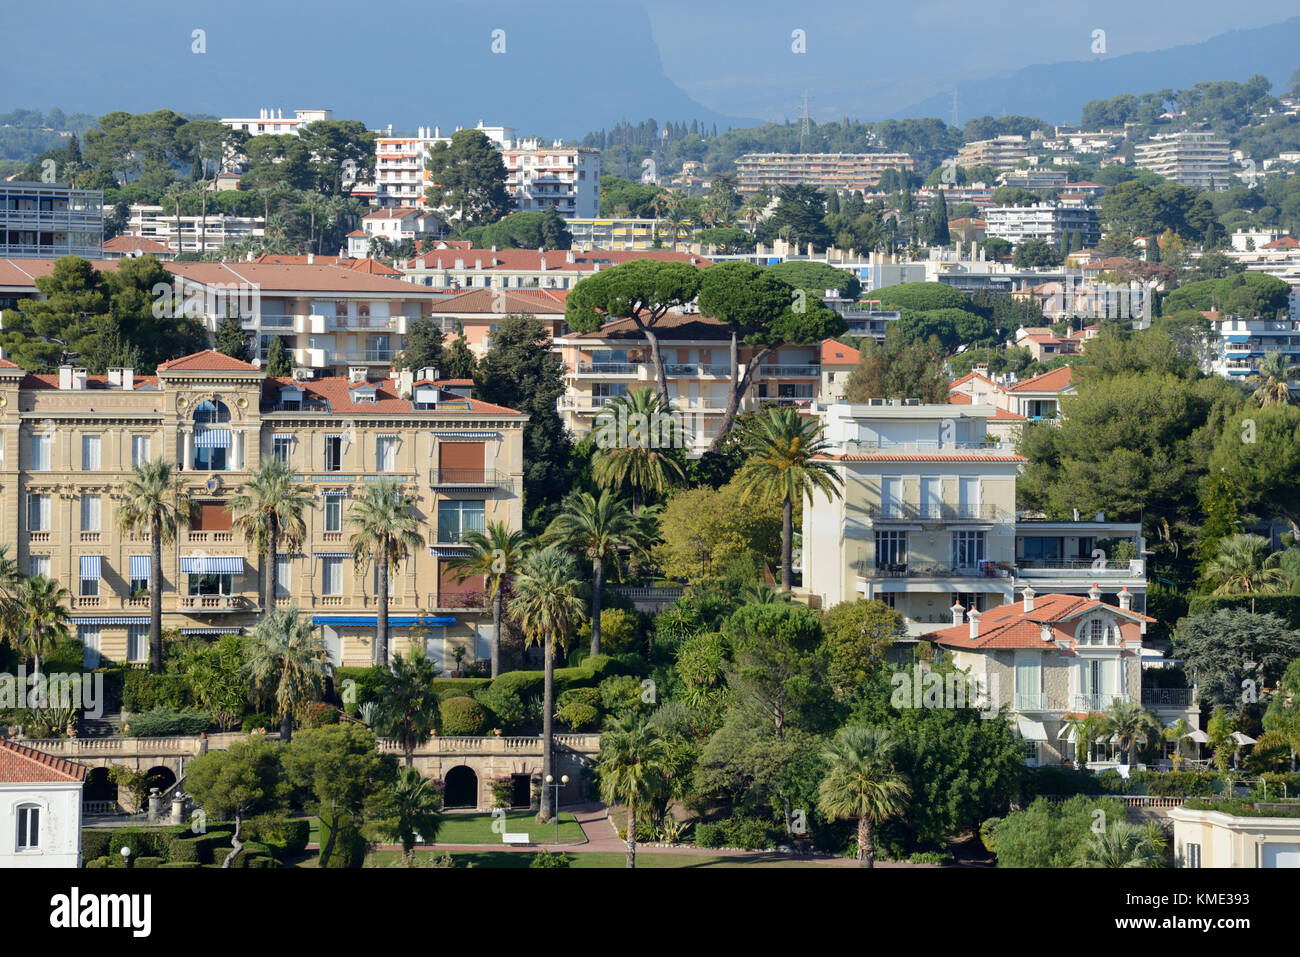 Vue aérienne sur le quartier historique de Cannes, avec les propriétés Belle Epoque, Alpes-Maritimes, France Banque D'Images